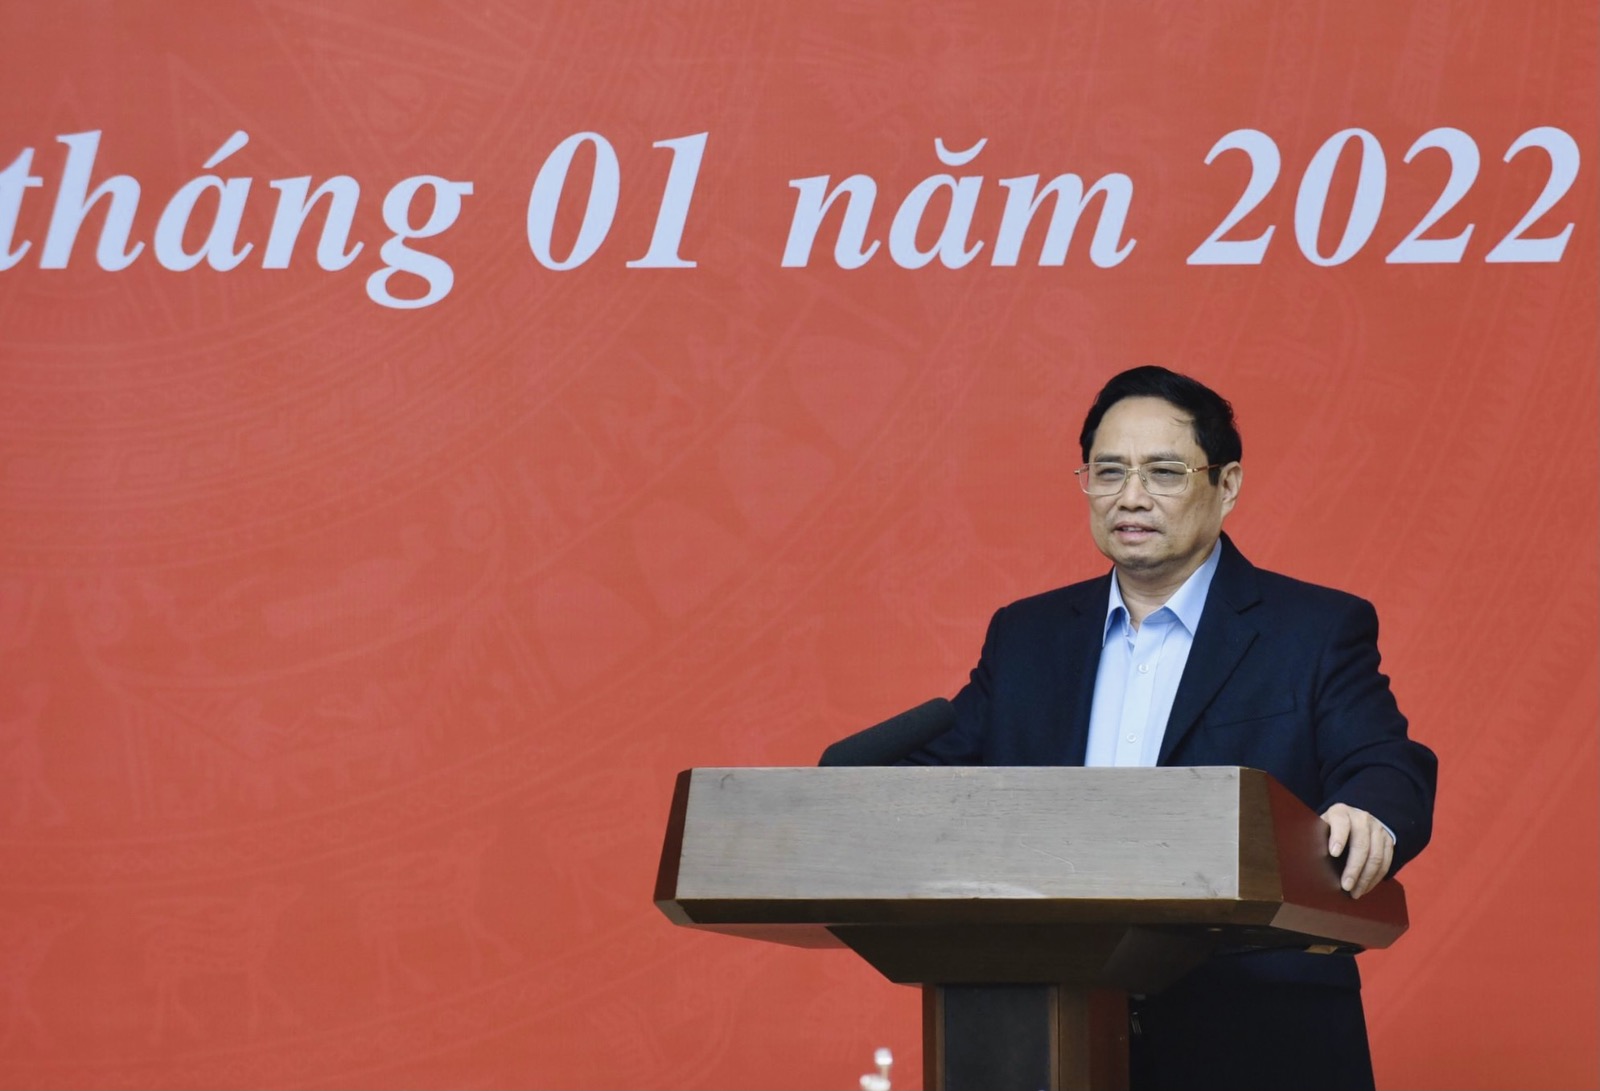 Thủ tướng Phạm Minh Chính: Nỗ lực xây dựng được cơ sở dữ liệu lớn về người dân, thúc đẩy chuyển đổi số quốc gia - Ảnh 1.